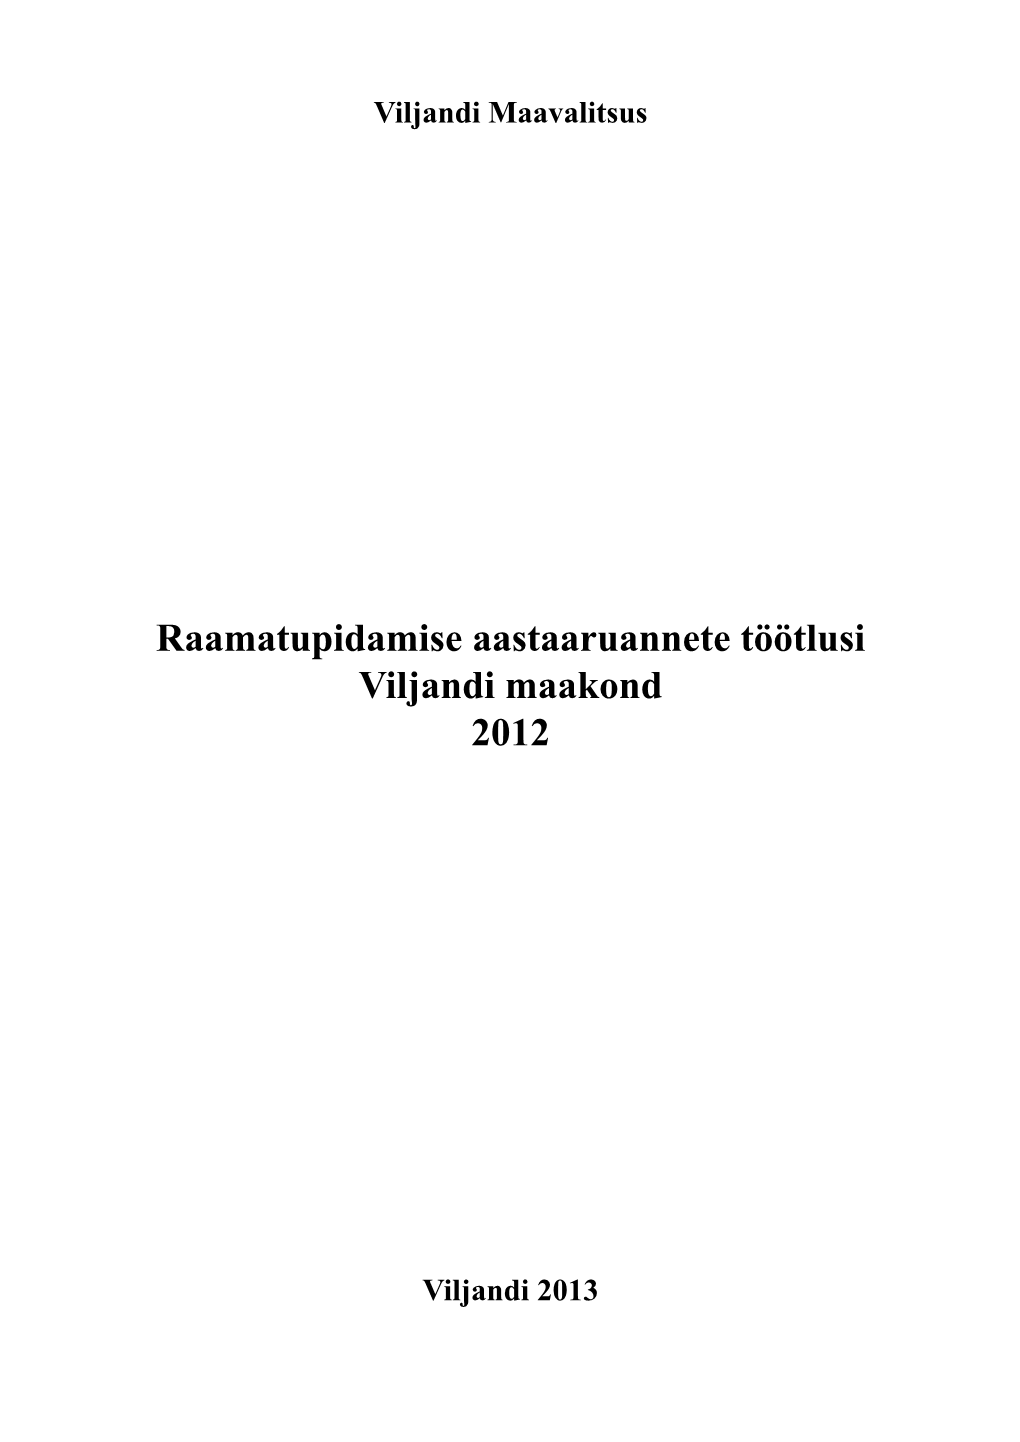 Raamatupidamise Aastaaruannete Töötlusi Viljandi Maakond 2012